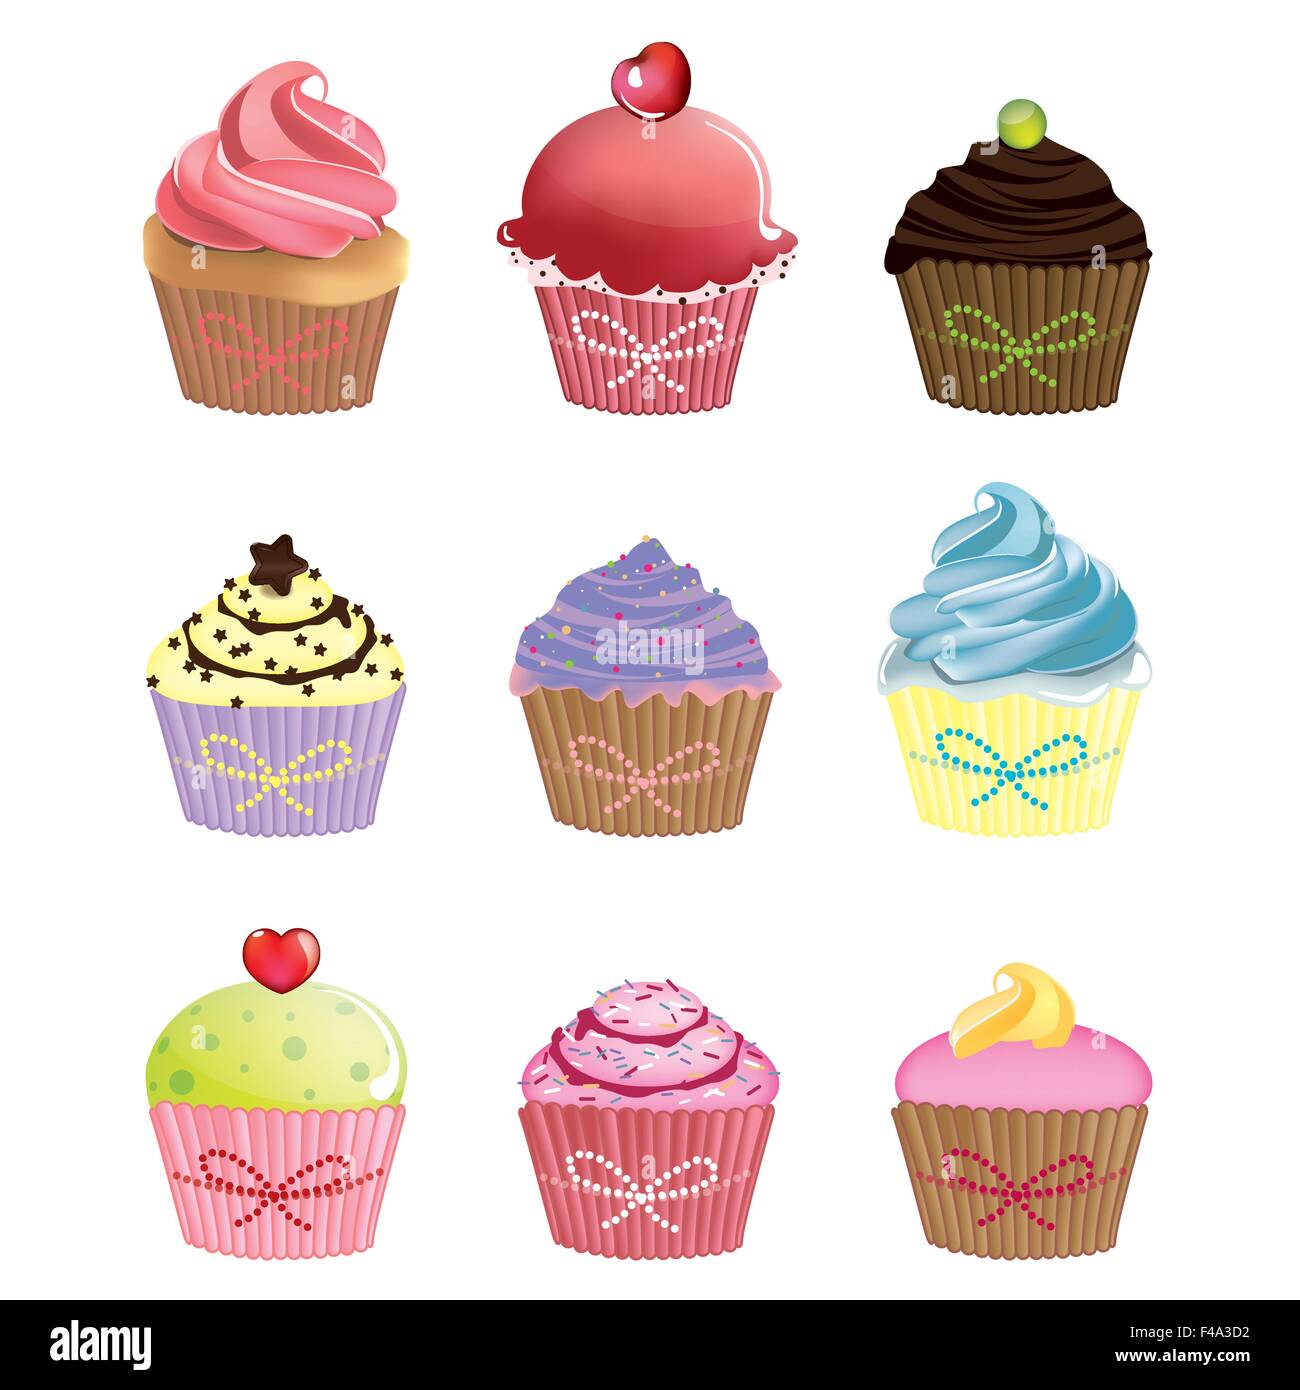 Cute cupcakes vector set Stock Vector